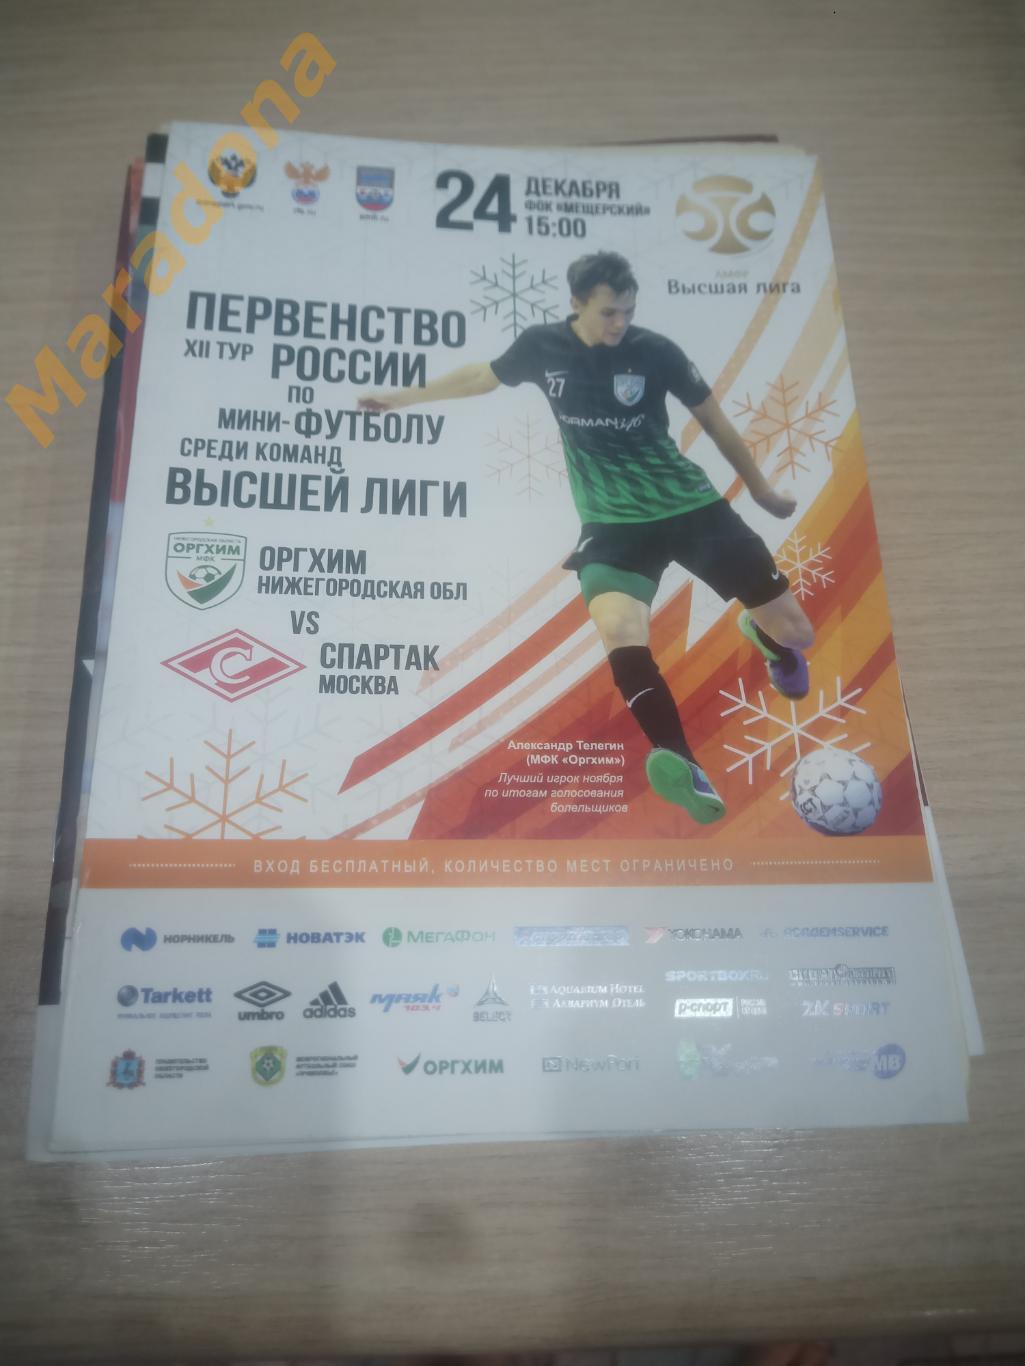 Оргхим Нижний Новгород - Спартак Москва 2017